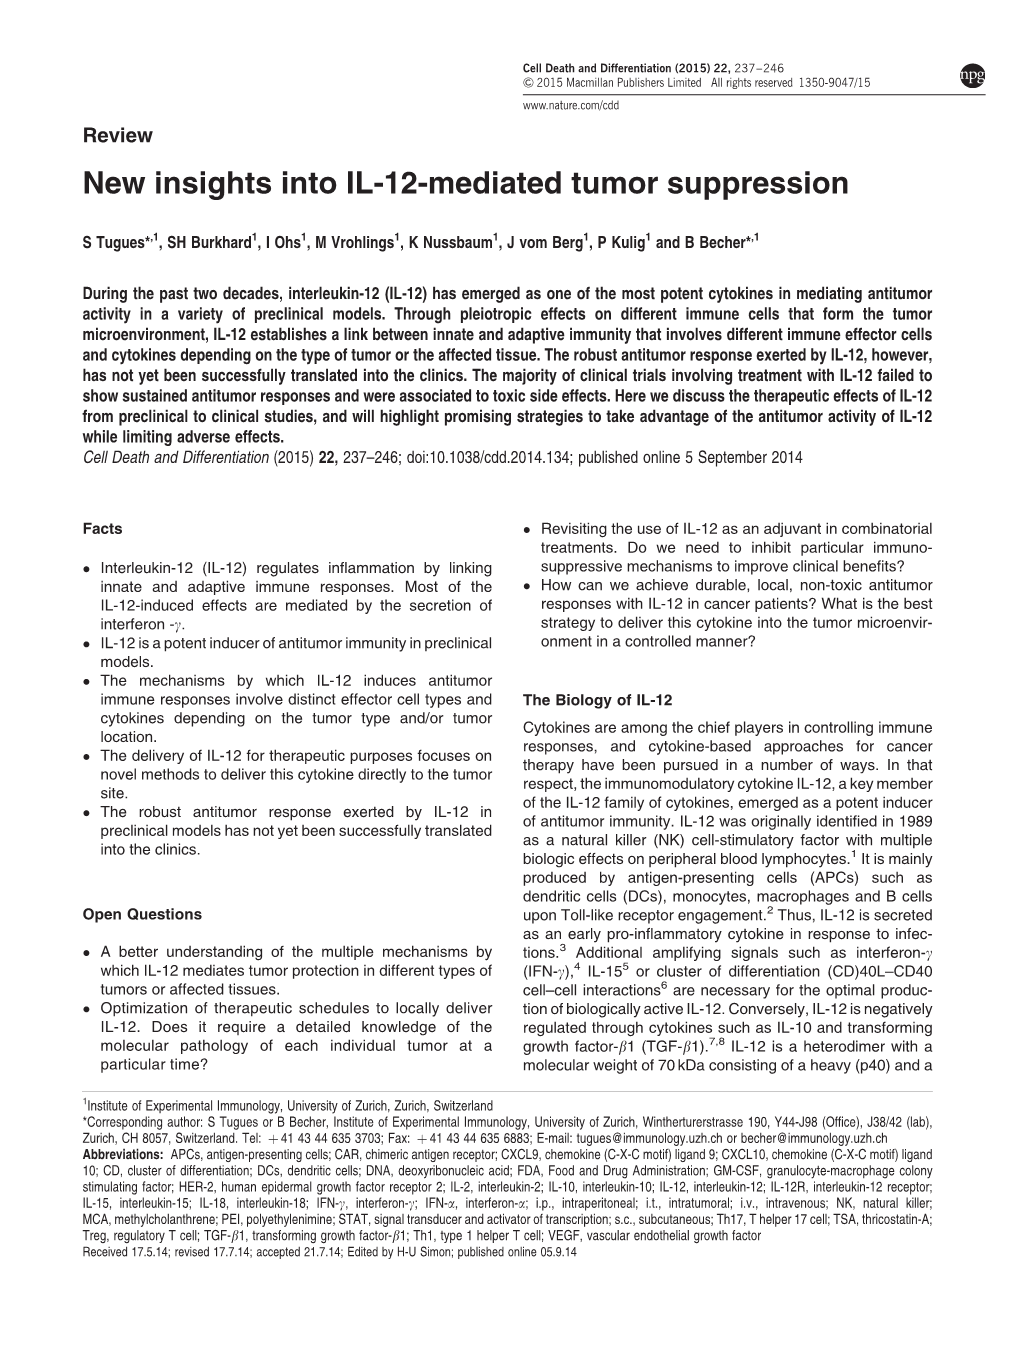 New Insights Into IL-12-Mediated Tumor Suppression